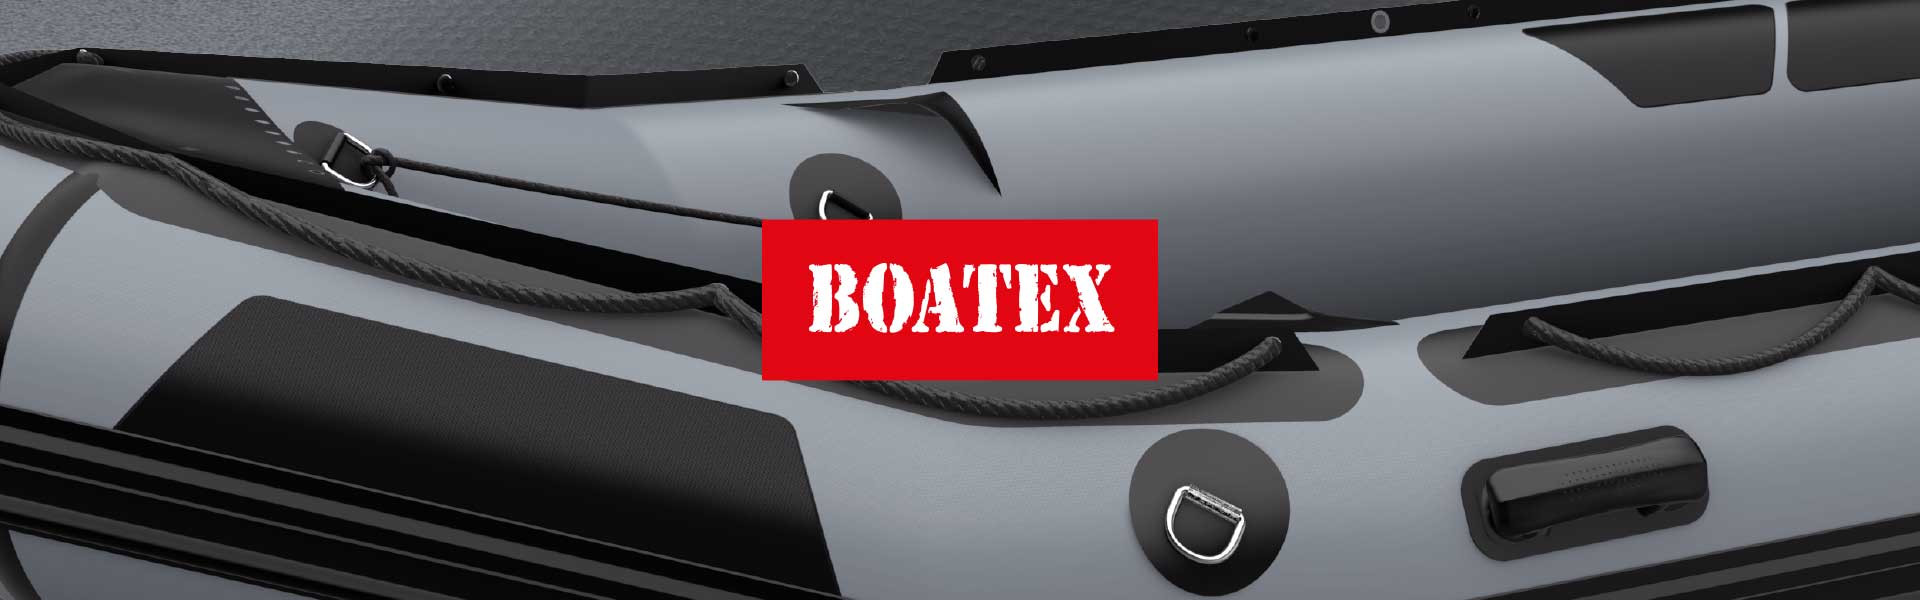 BOATEX 800 г/м.кв темно-серого цвета – 4,93$ за м.кв